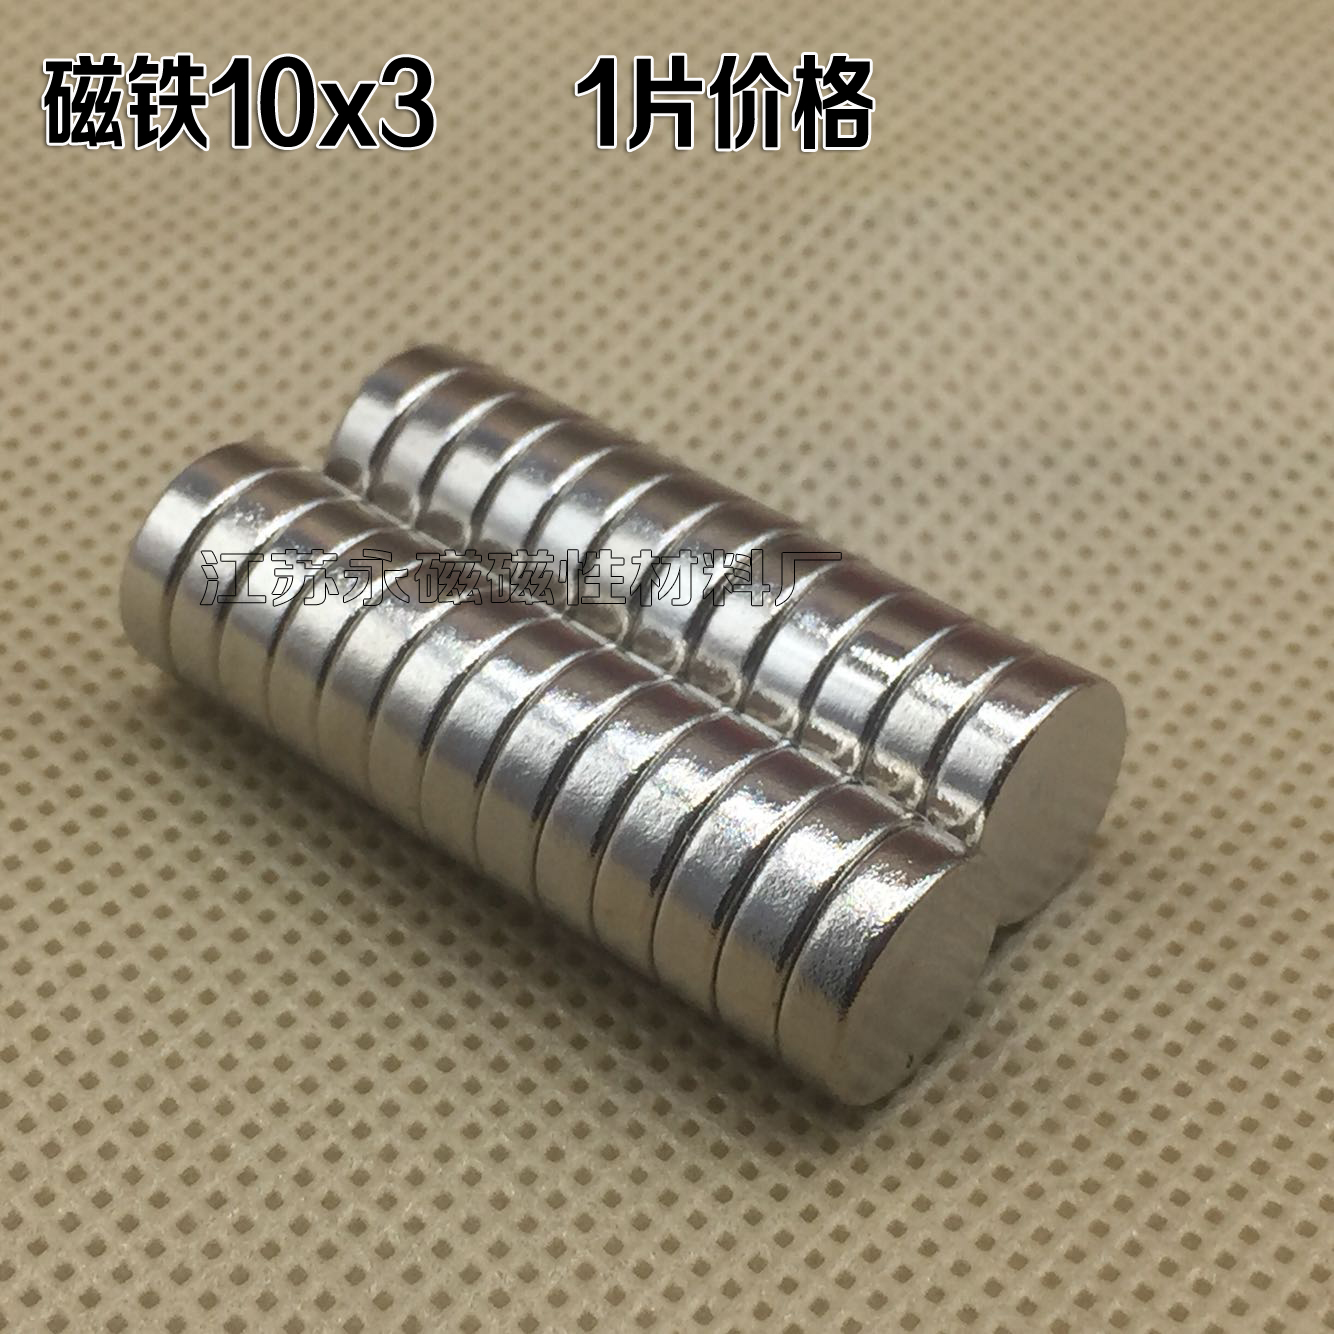 稀土强磁铁10x3毫米 钕铁硼强磁 圆形小磁铁 包装磁铁 纽扣磁铁